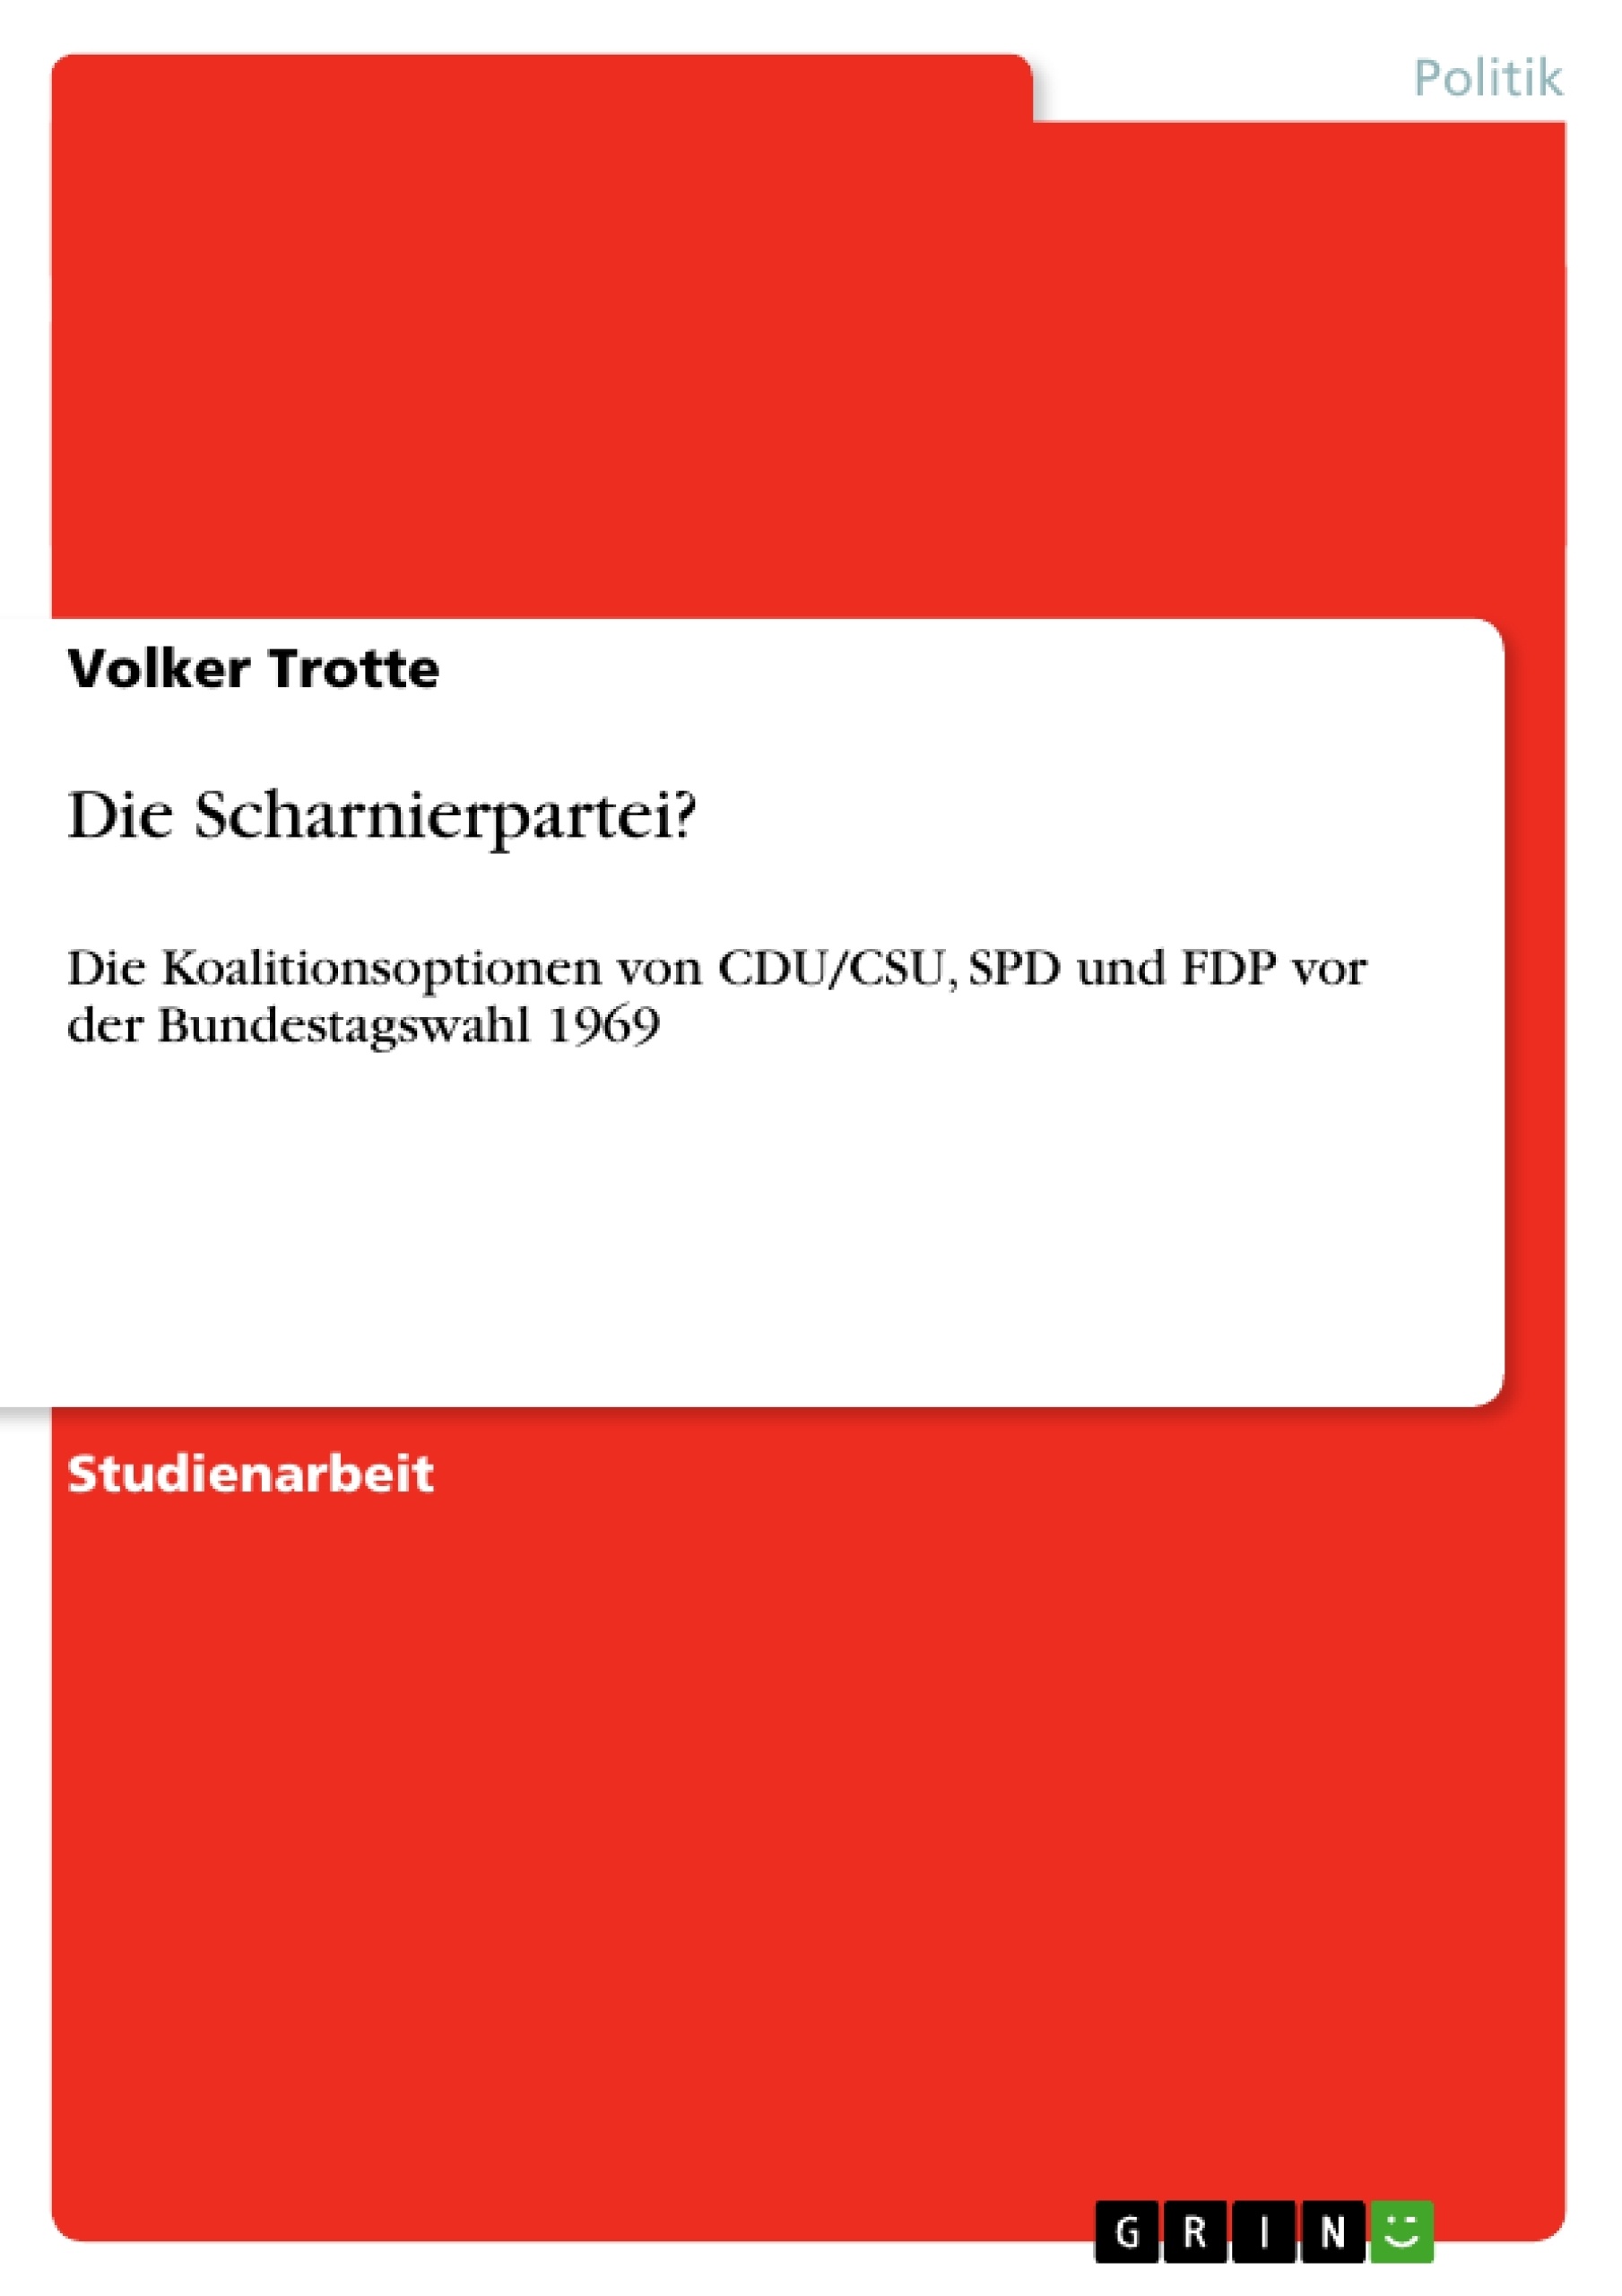 Title: Die Scharnierpartei?